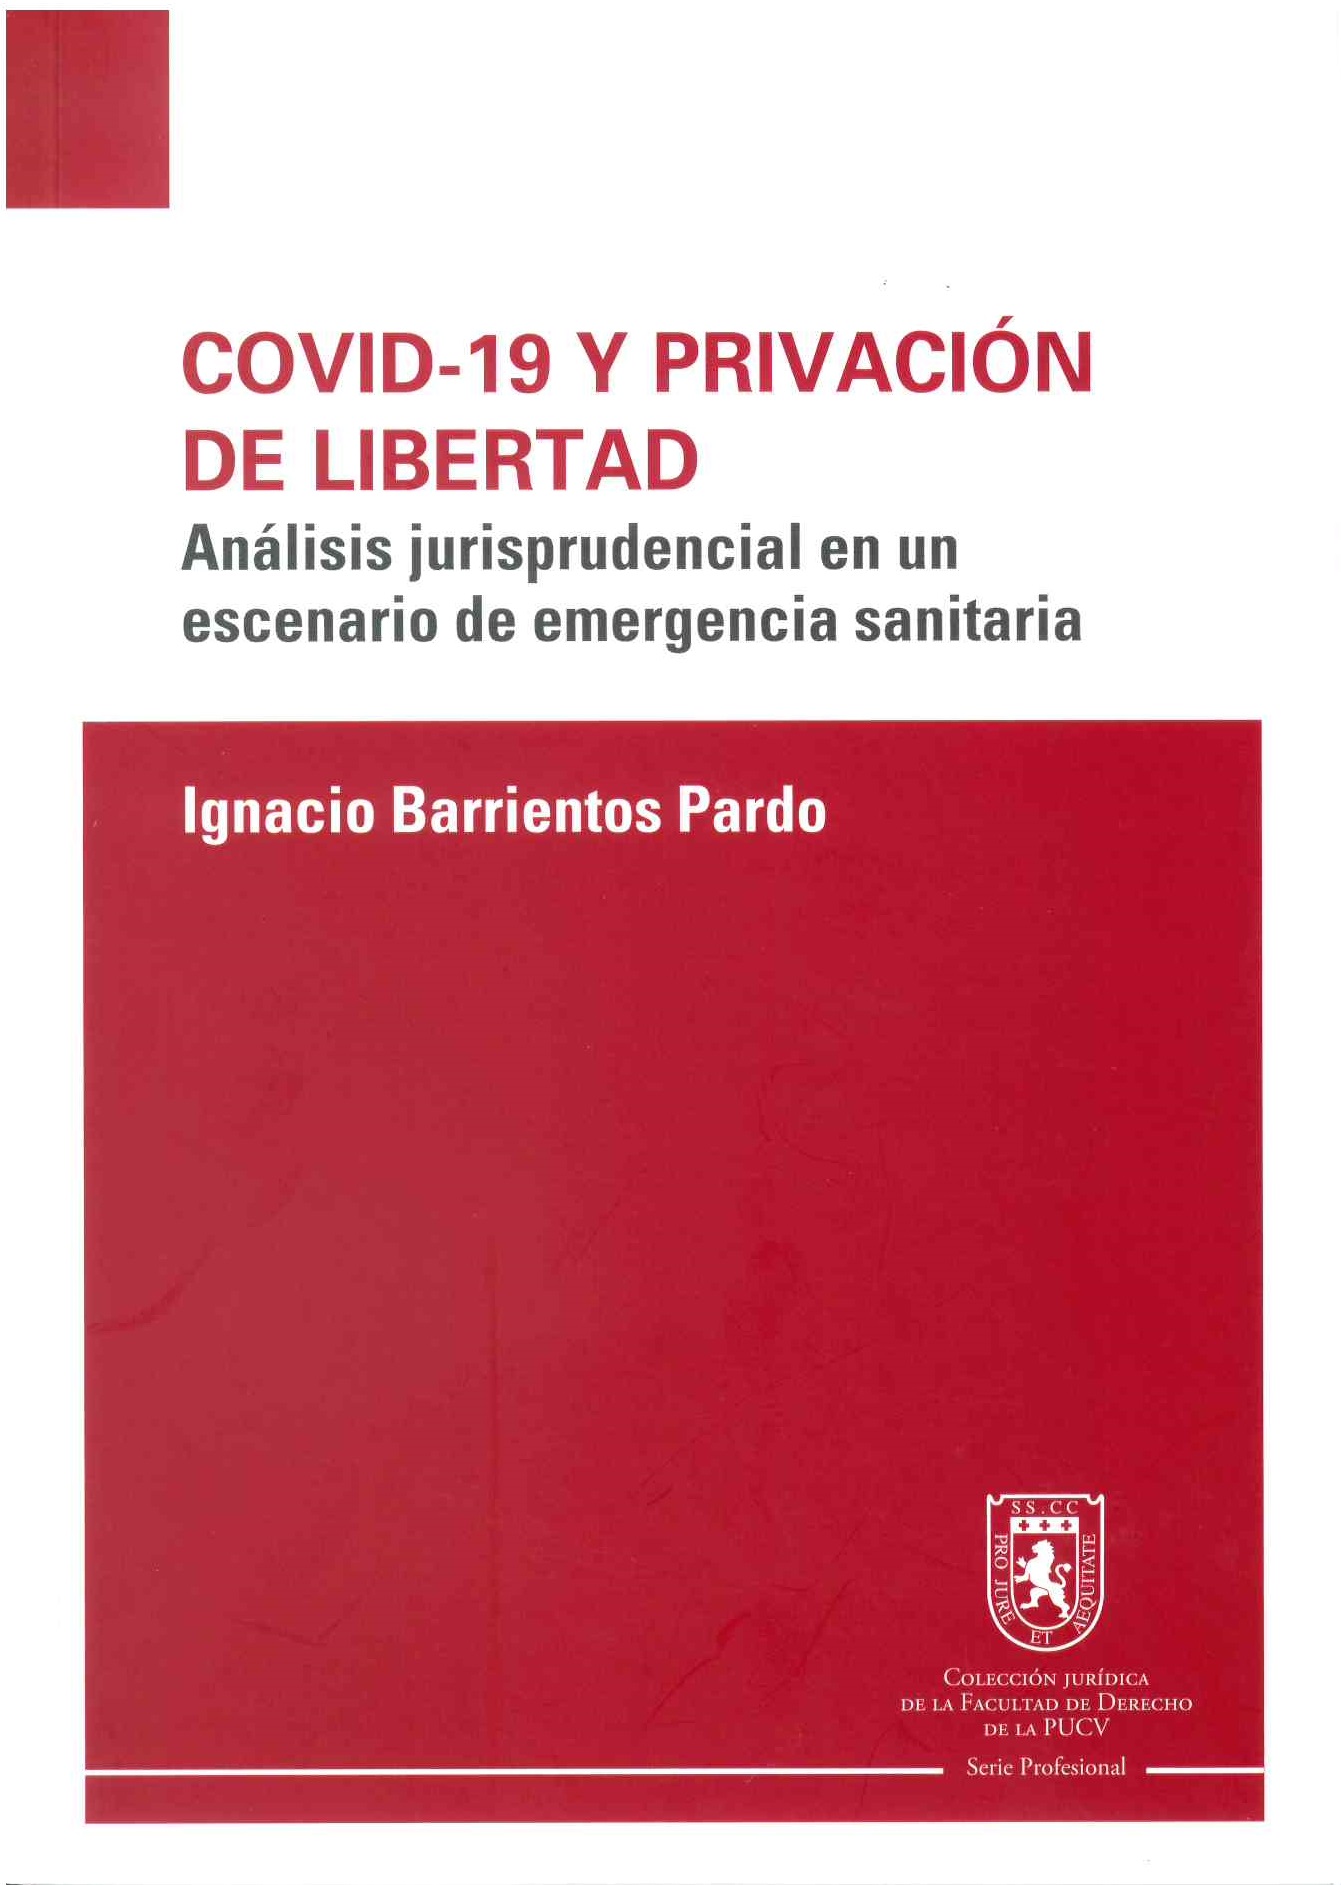 Covid-19 y privación de libertad